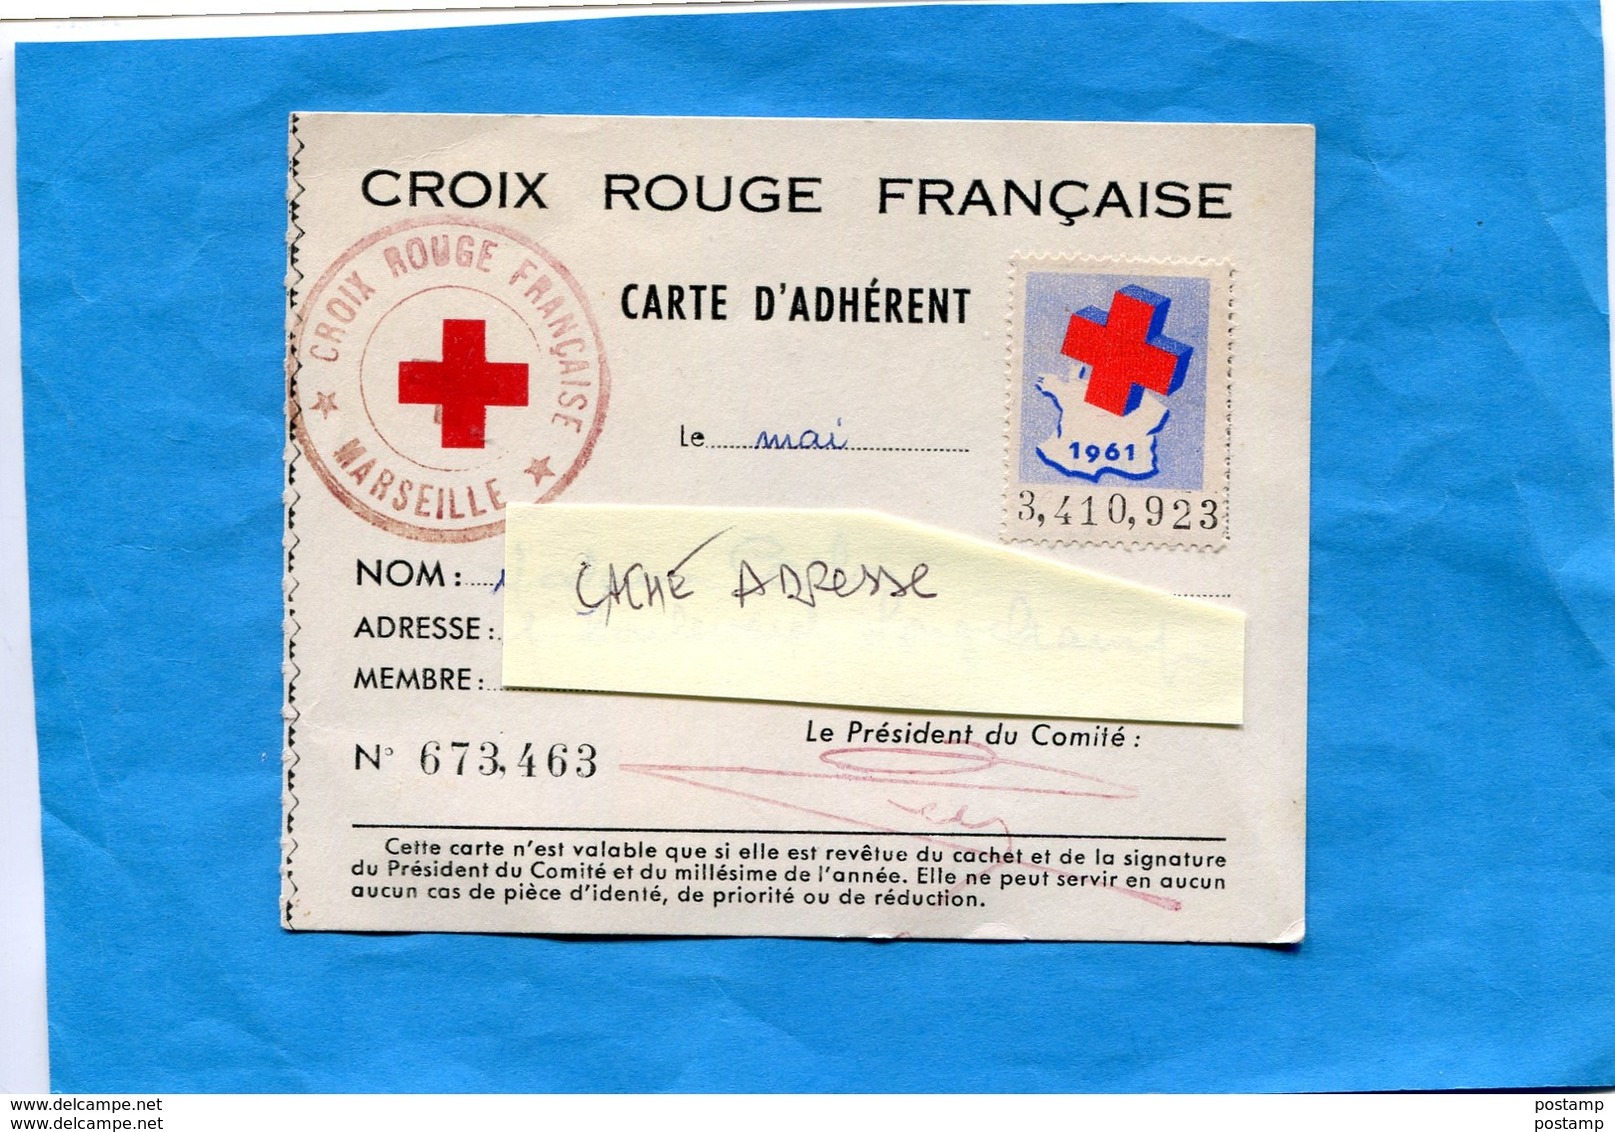 Croix Rouge -Carte D'adhérent Vignette 1961-  Cachet -plus Au Dos Vignette Internationale 3Frs - Croix Rouge